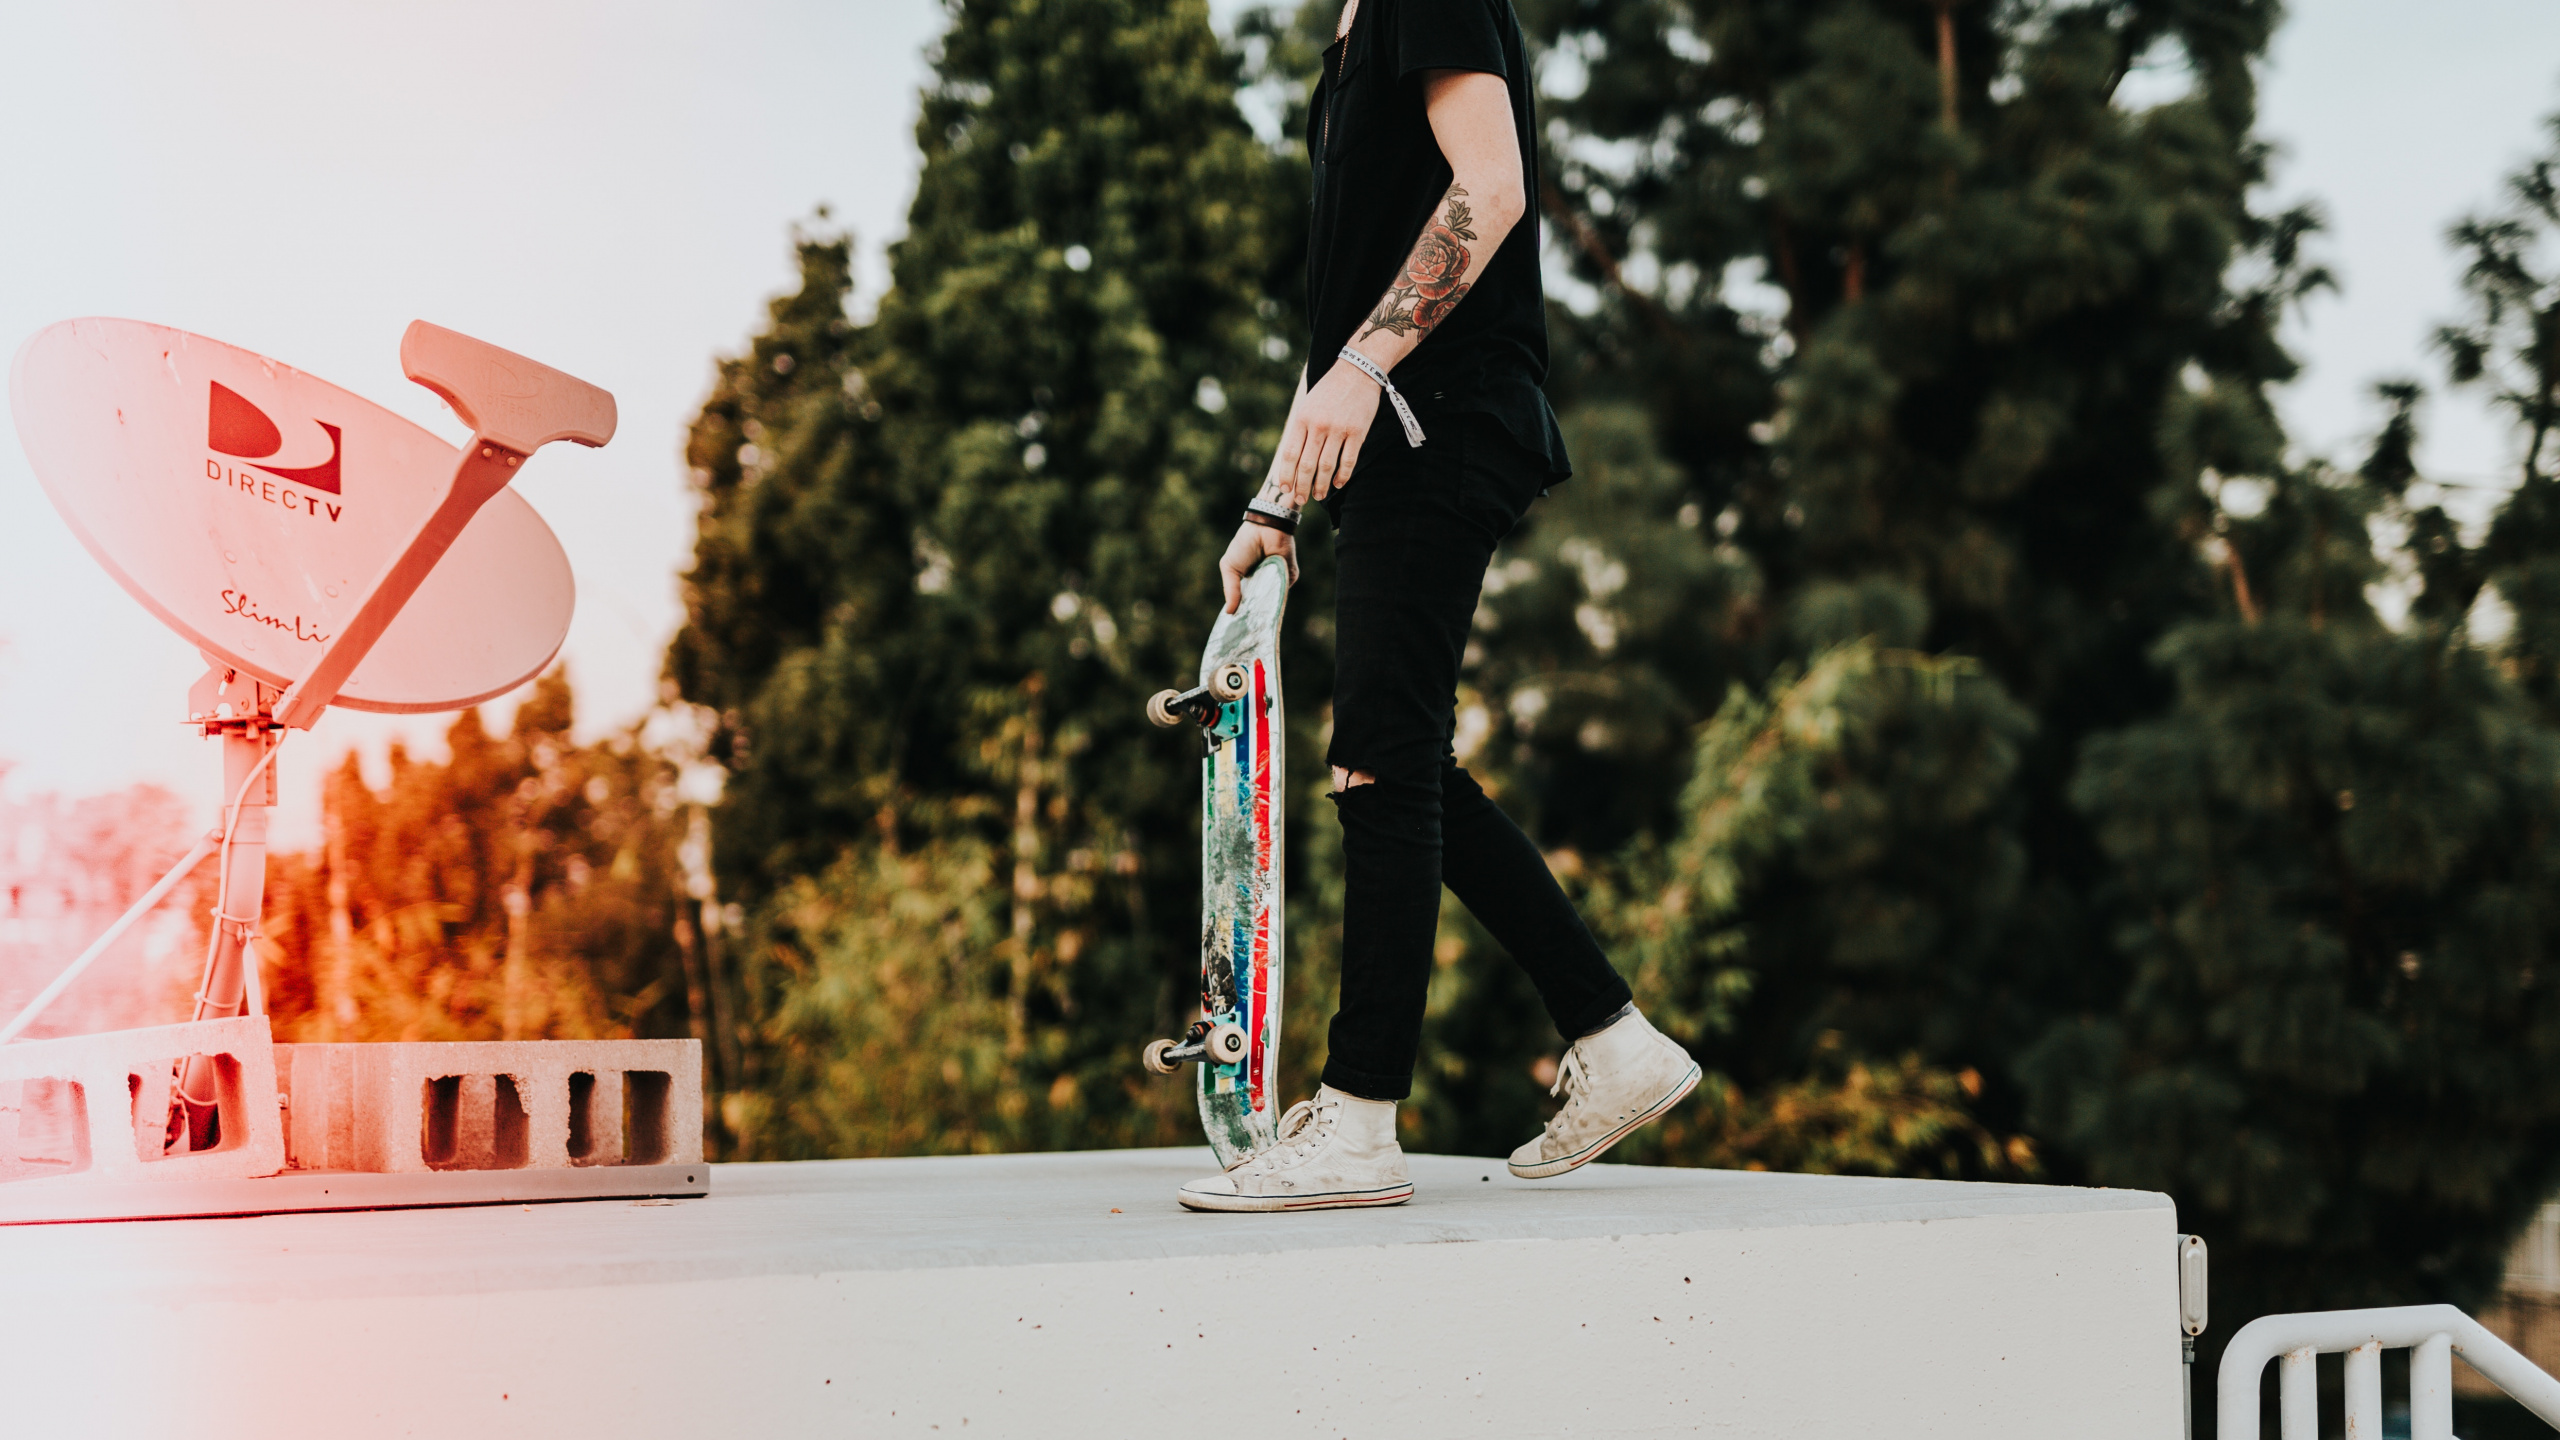 Mann in Schwarzer Hose Und Schwarzer Jacke, Der Skateboard Fährt. Wallpaper in 2560x1440 Resolution